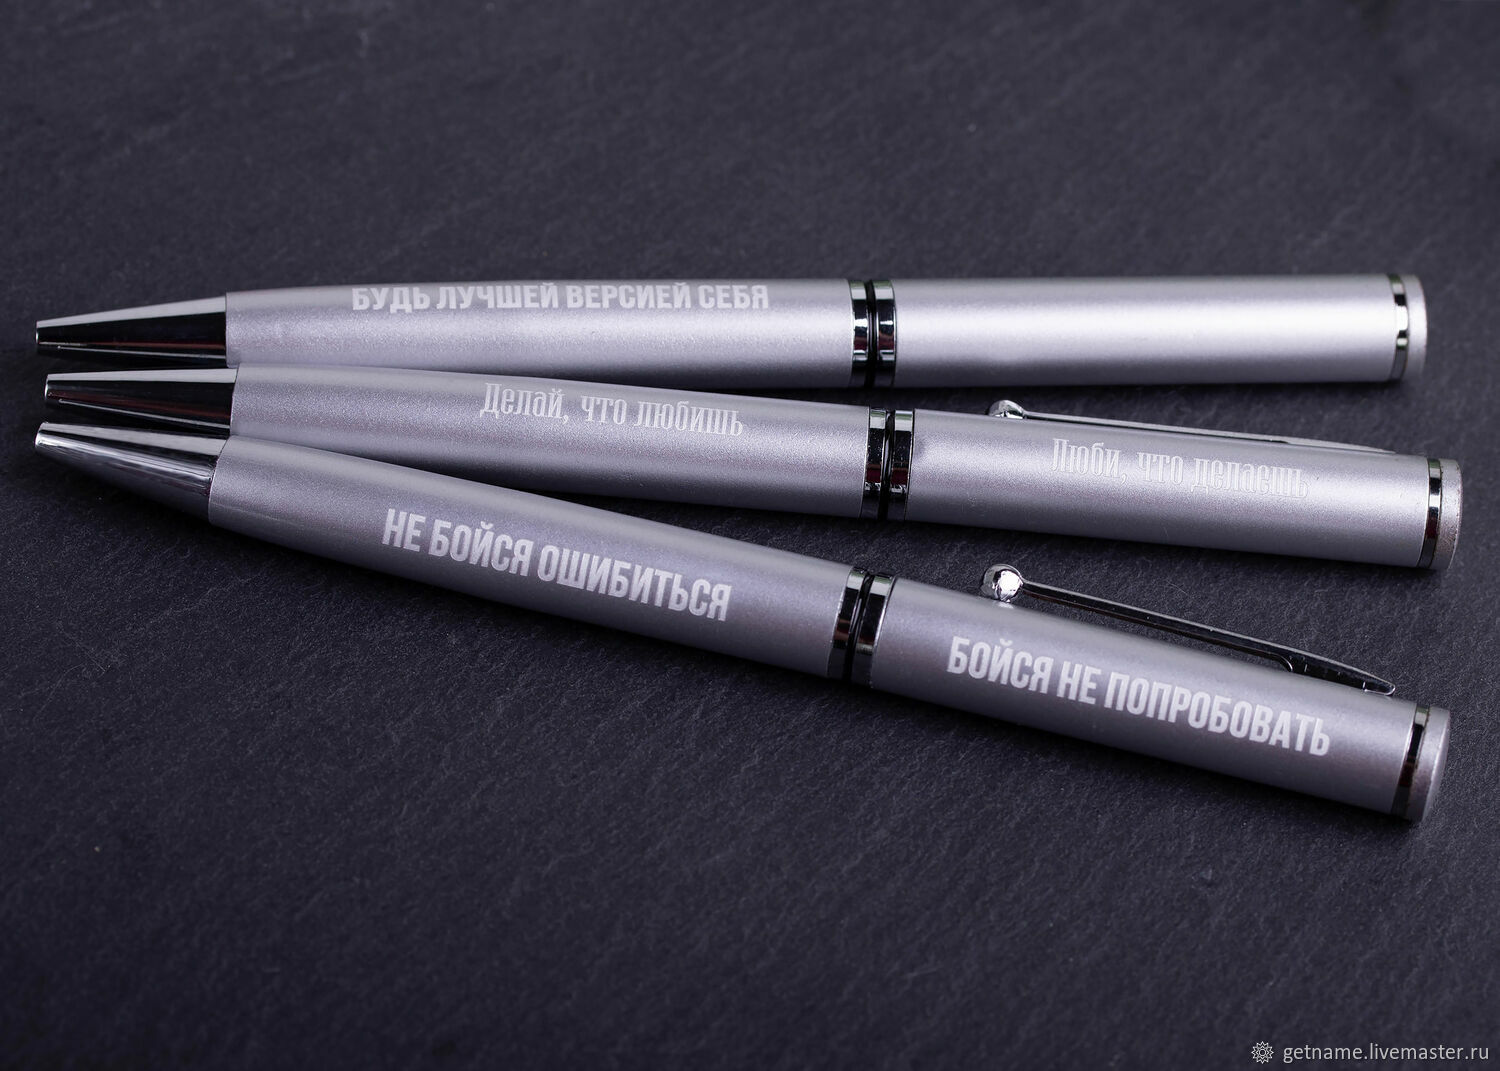 Ручка с гравировкой мотивационной надписи серебристый цвет, Ручки, Москва,  Фото №1